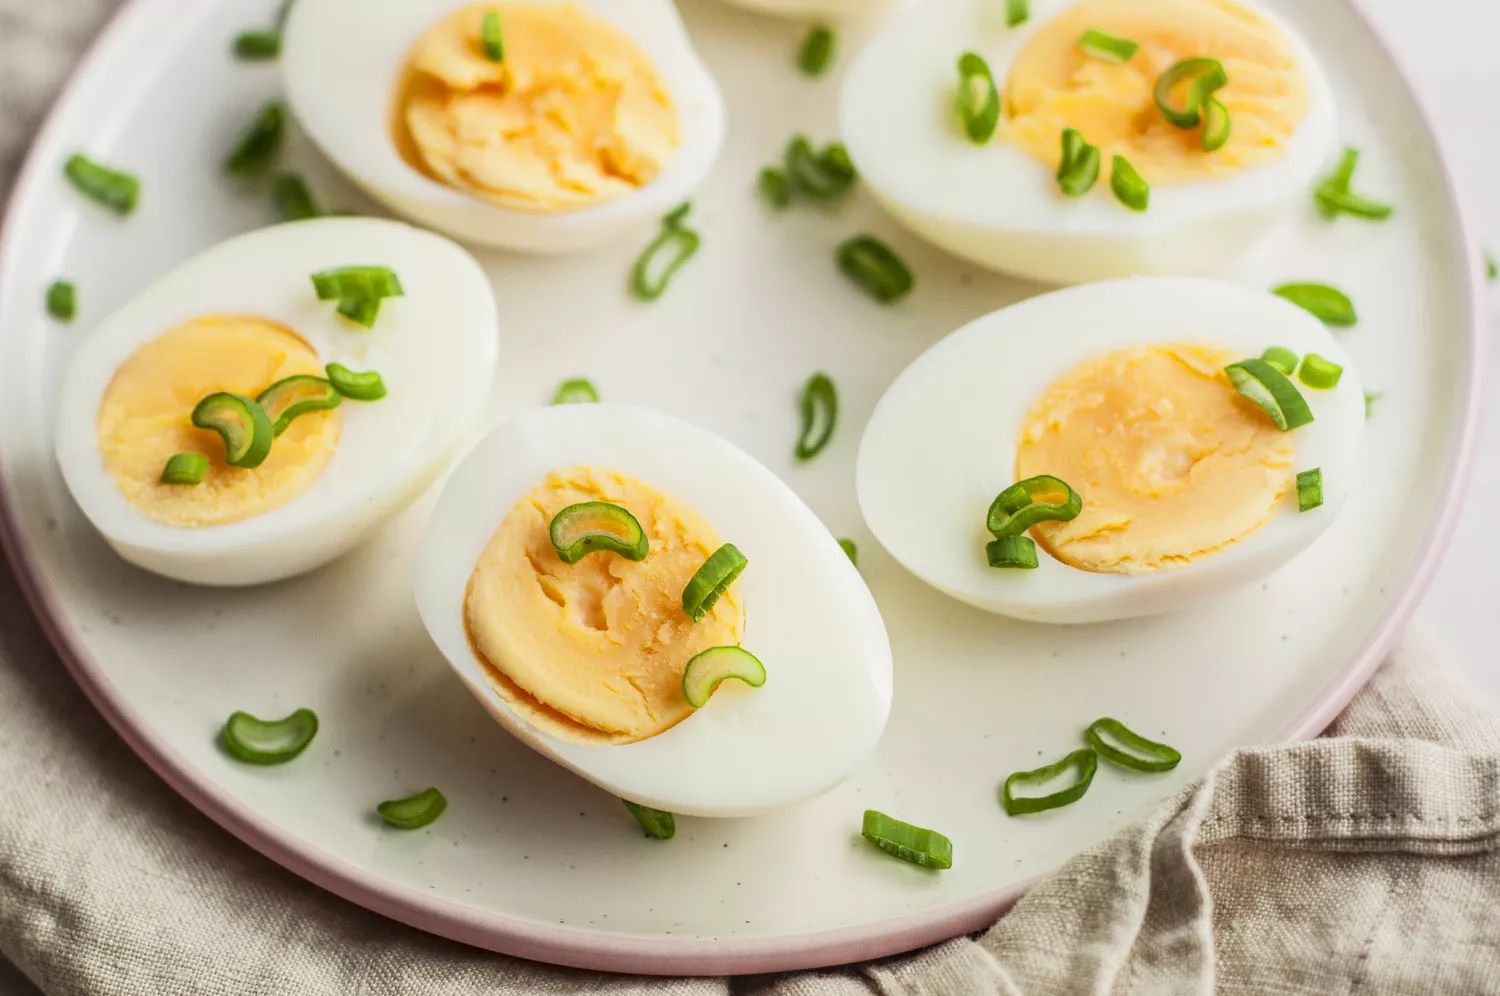 Cara Mengetahui Telur Rebus Sudah Matang atau Belum